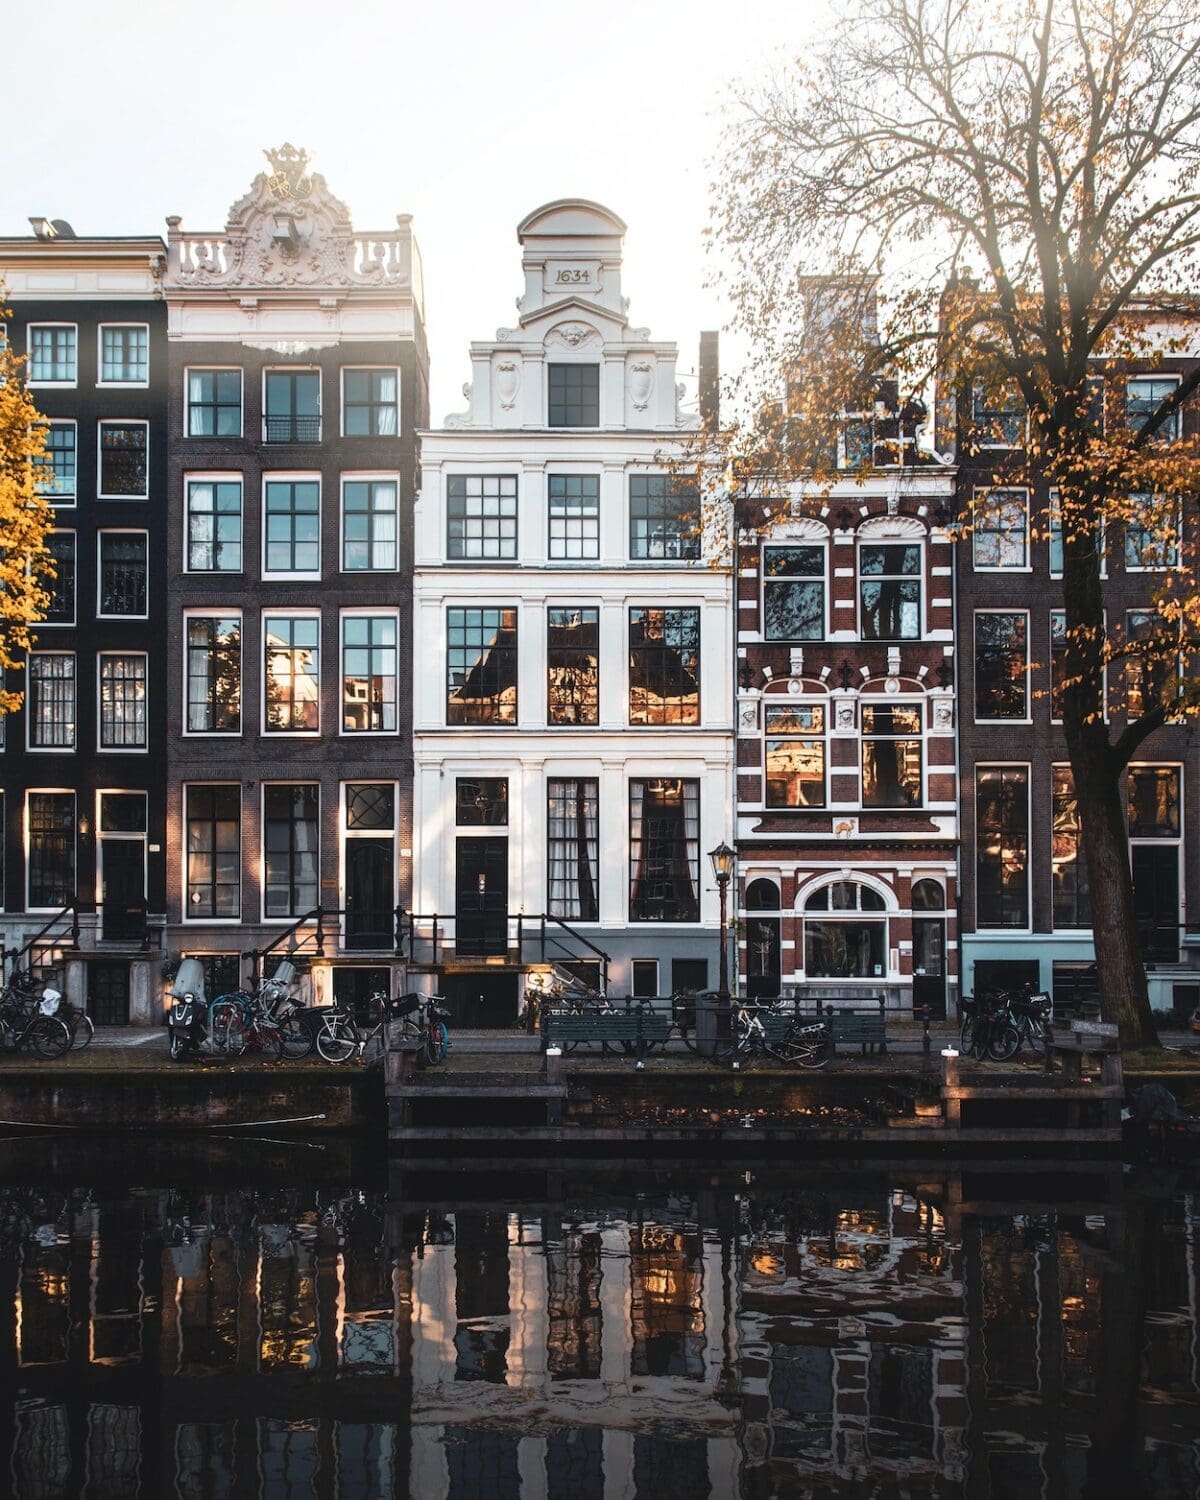 7 Tips om je woning in Amsterdam op een minimalistische manier in te richten